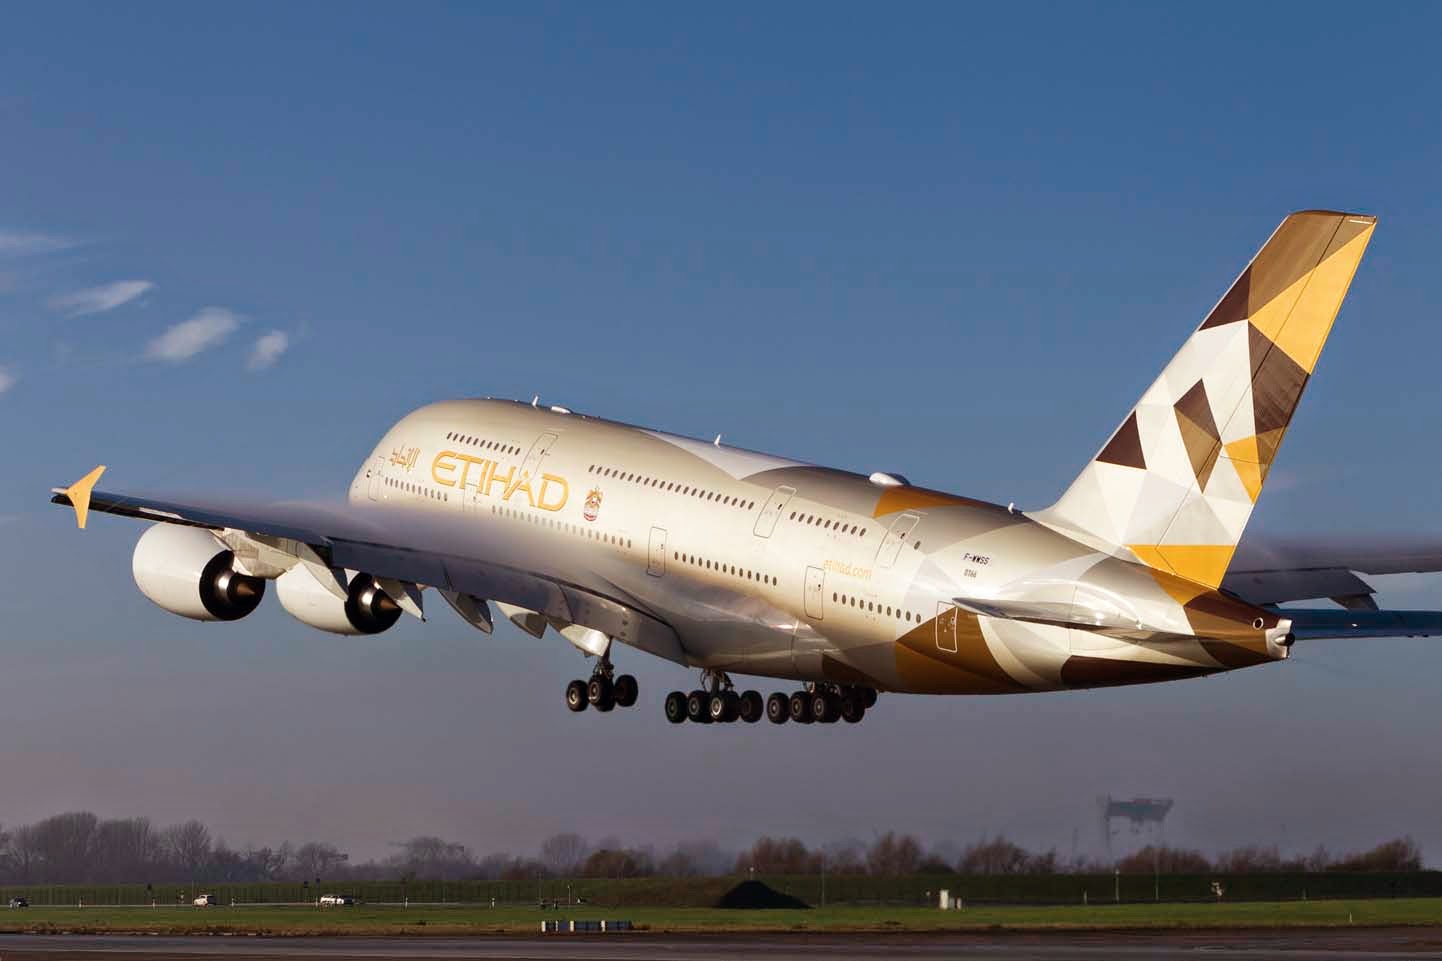 Le 1er A380 